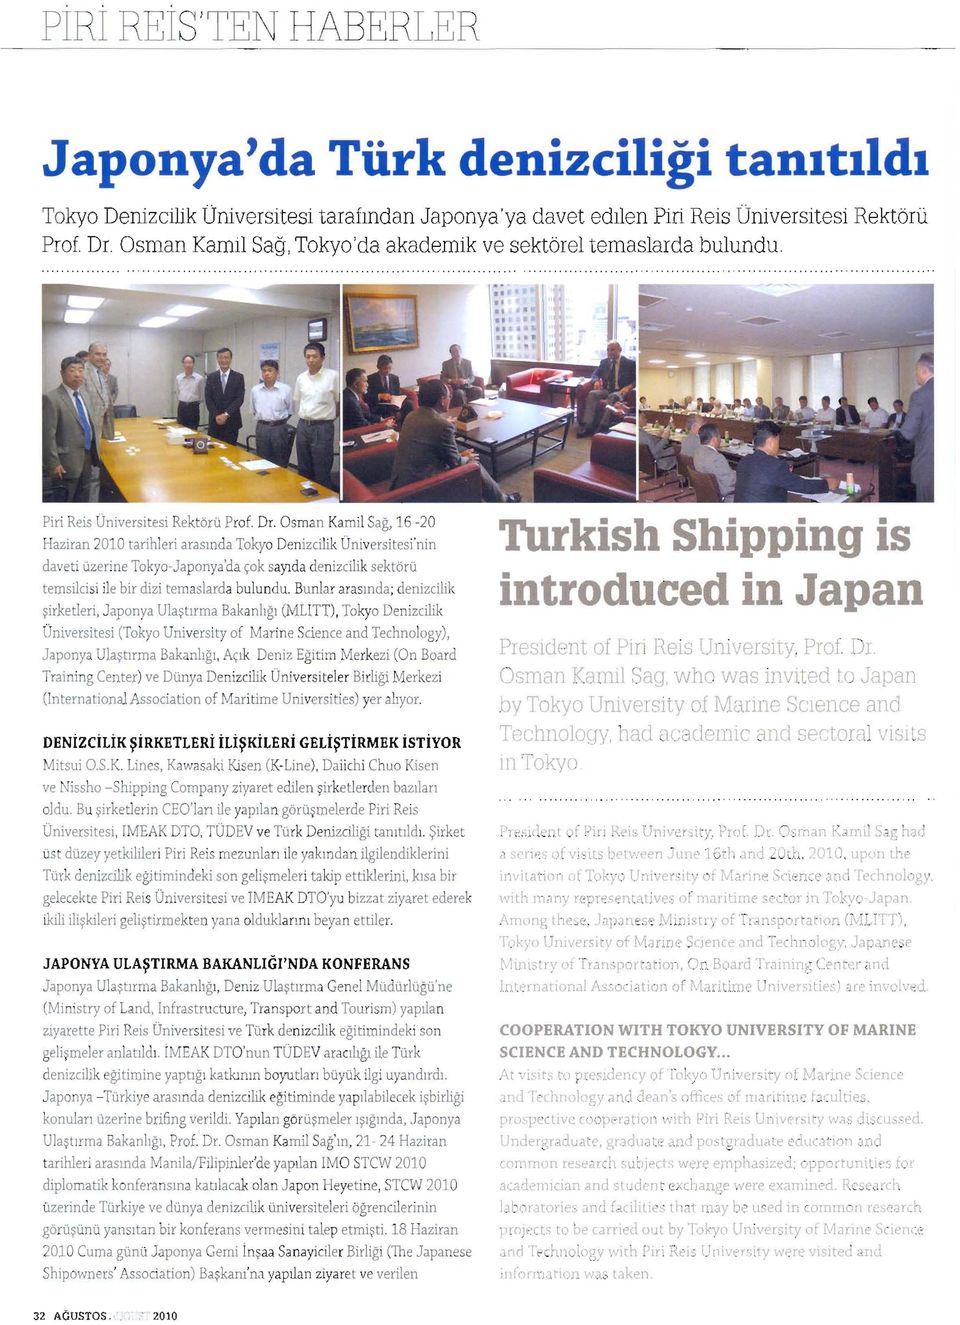 Osman Kamil S a ğ, 16-20 Haziran 2010 tarihleri a ras ın da Tokyo Denizcilik Üniversitesi'nin daveti üzerine Tokyo-Japonya'da çok s ayı d a denizcilik sektörü temsilcisi ile bir dizi temaslarda